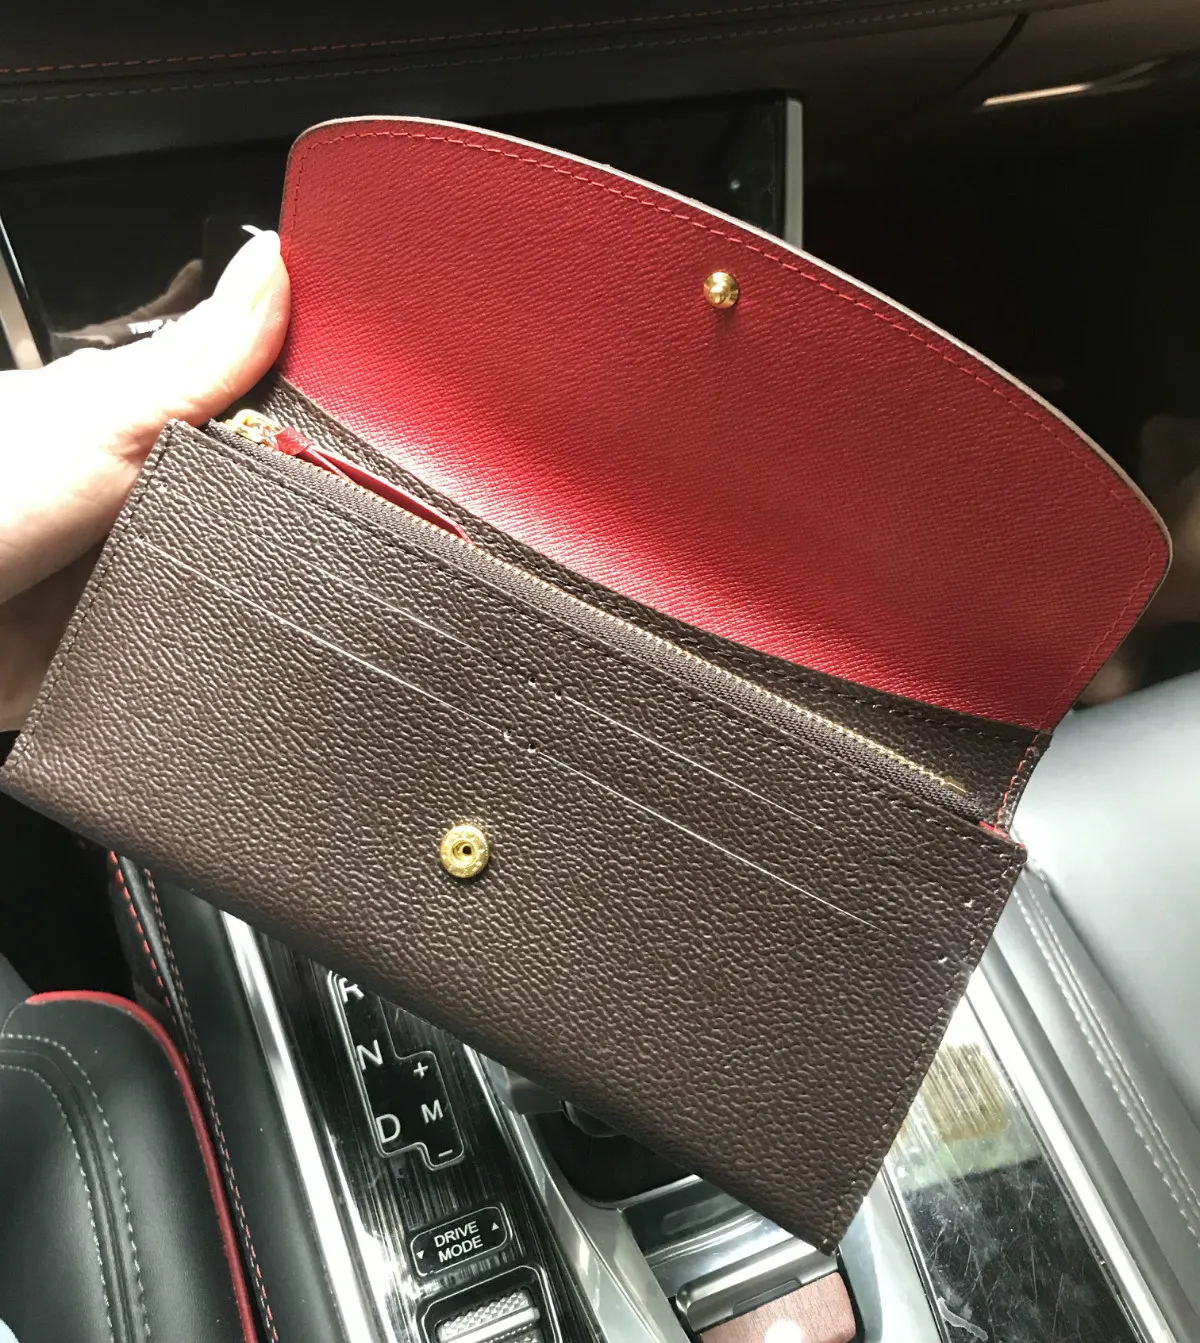 Hoge kwaliteit Designer Wallets Holders Vrouw Long Zipper Purse Girl Card Bag Tas MoneyBag274V